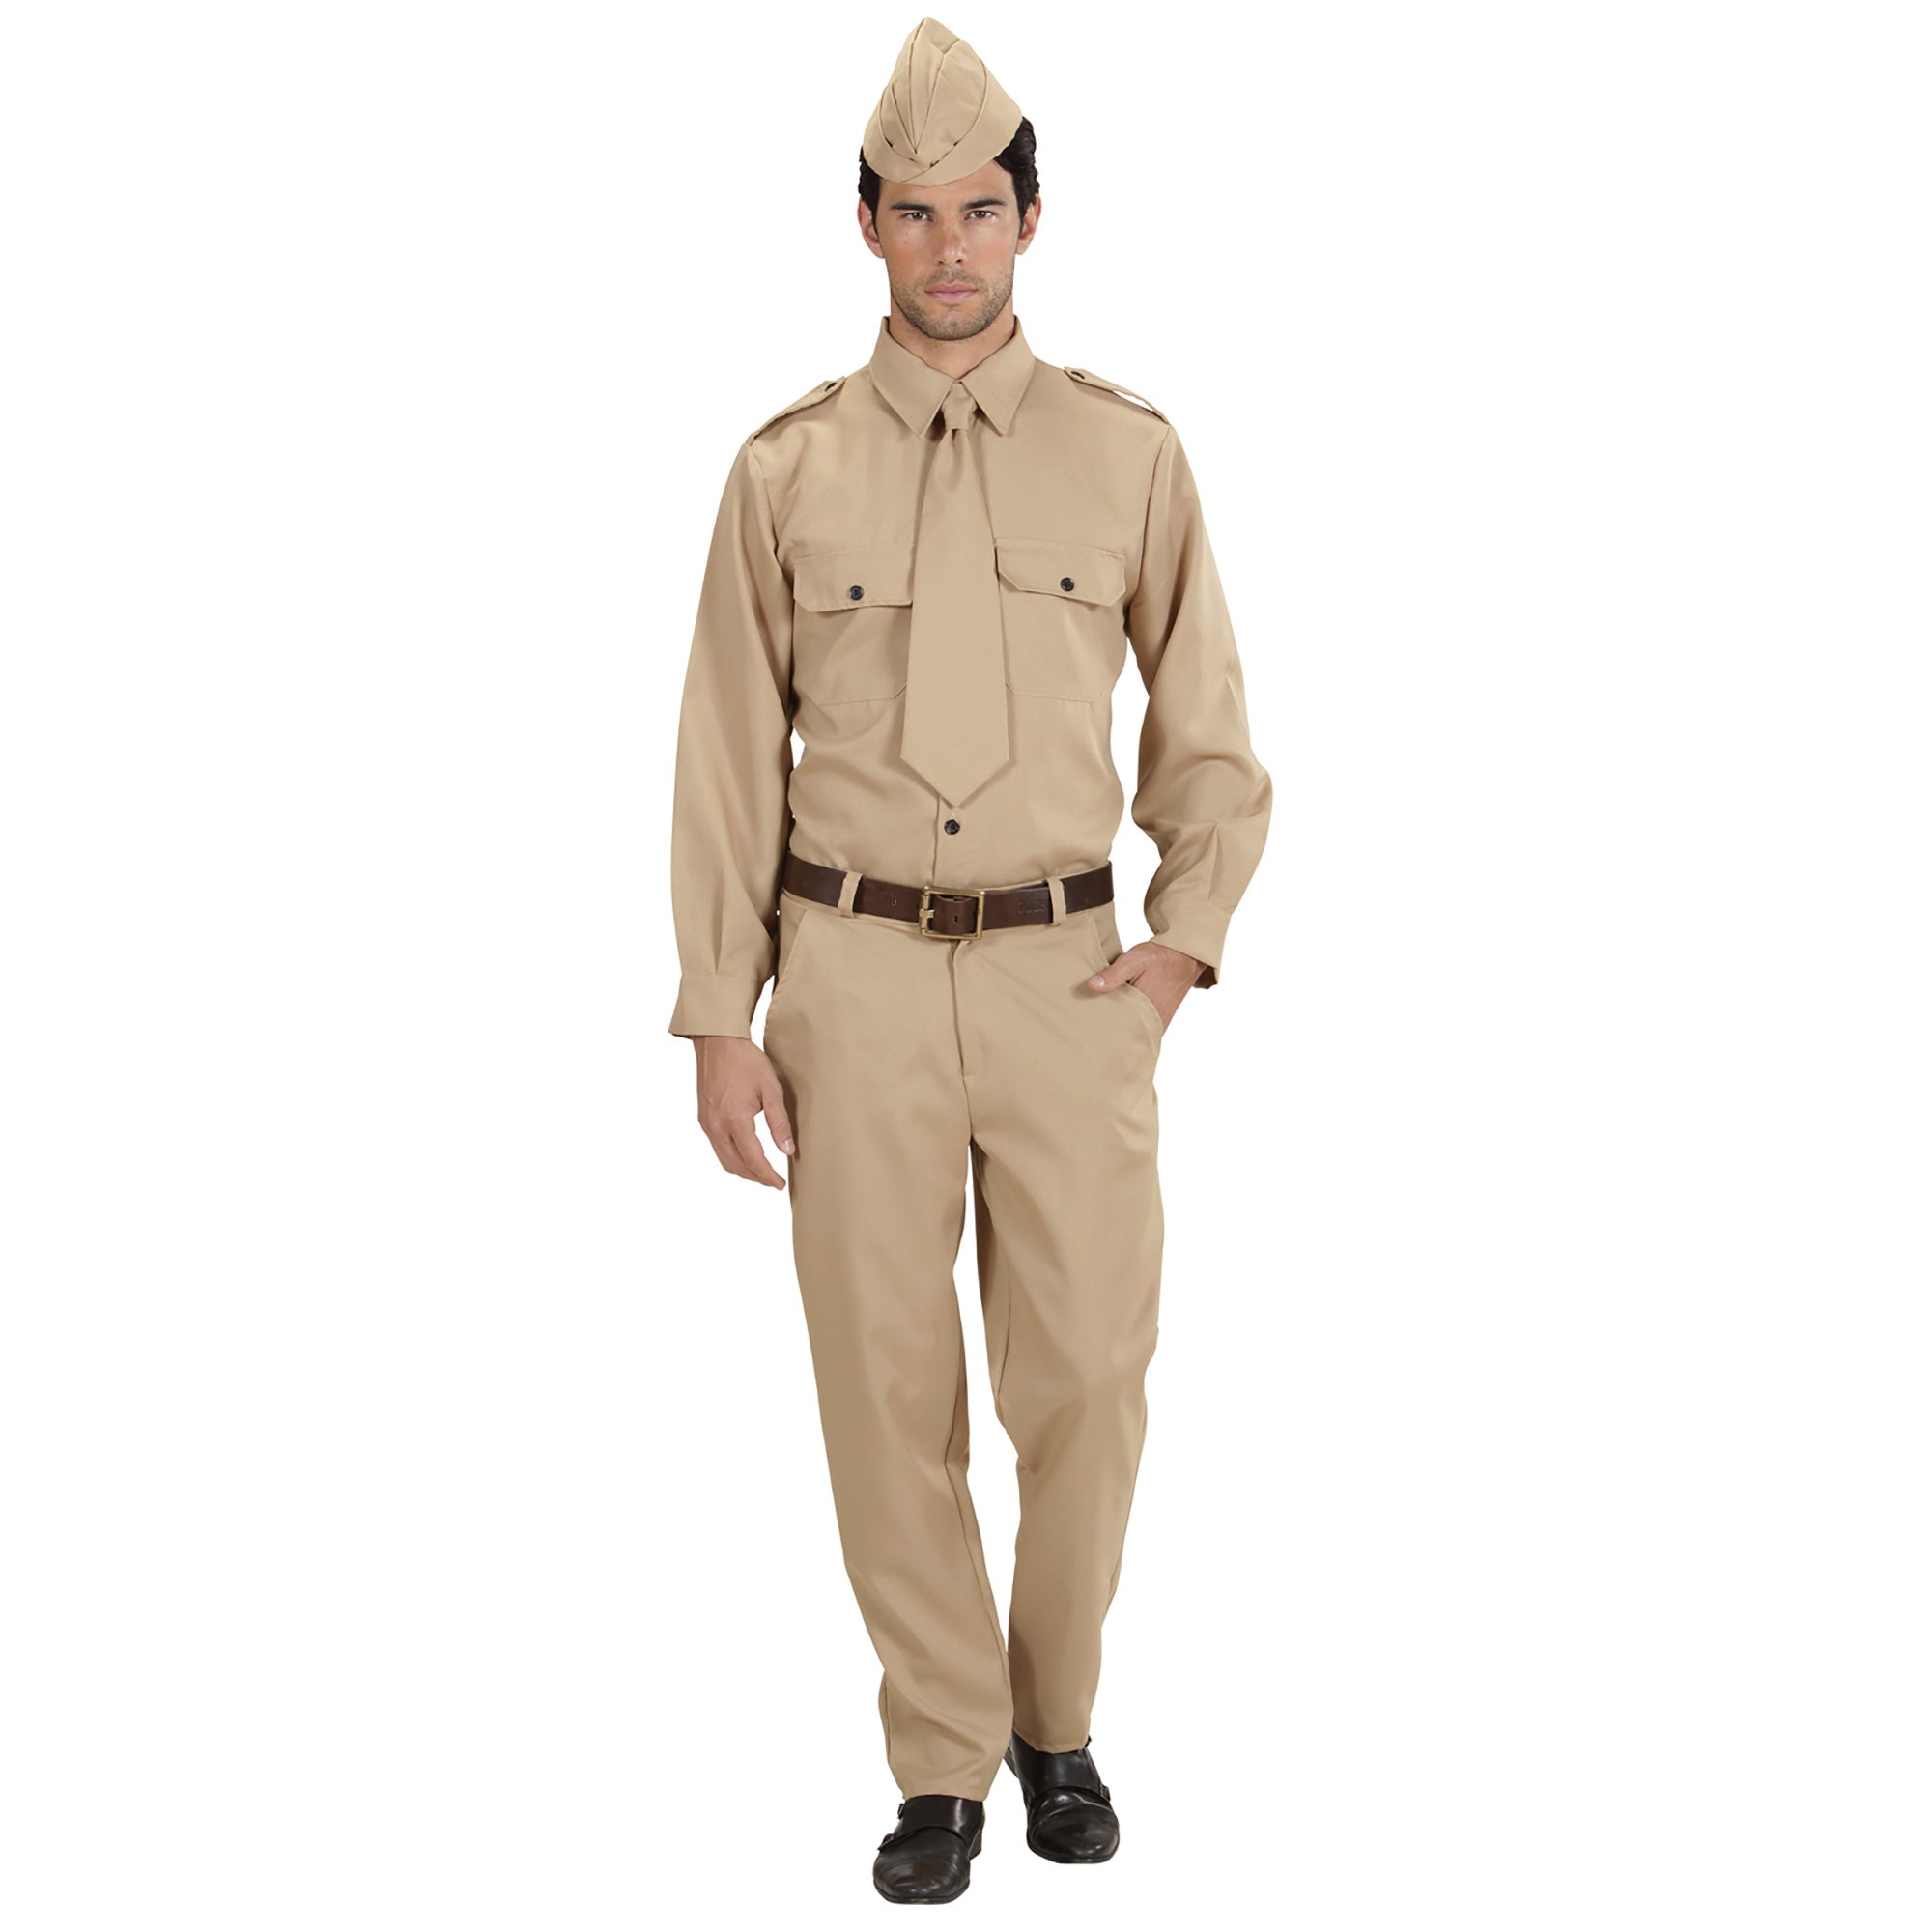 "Amerikaans soldatenkostuum voor volwassenen - Verkleedkleding - Medium"